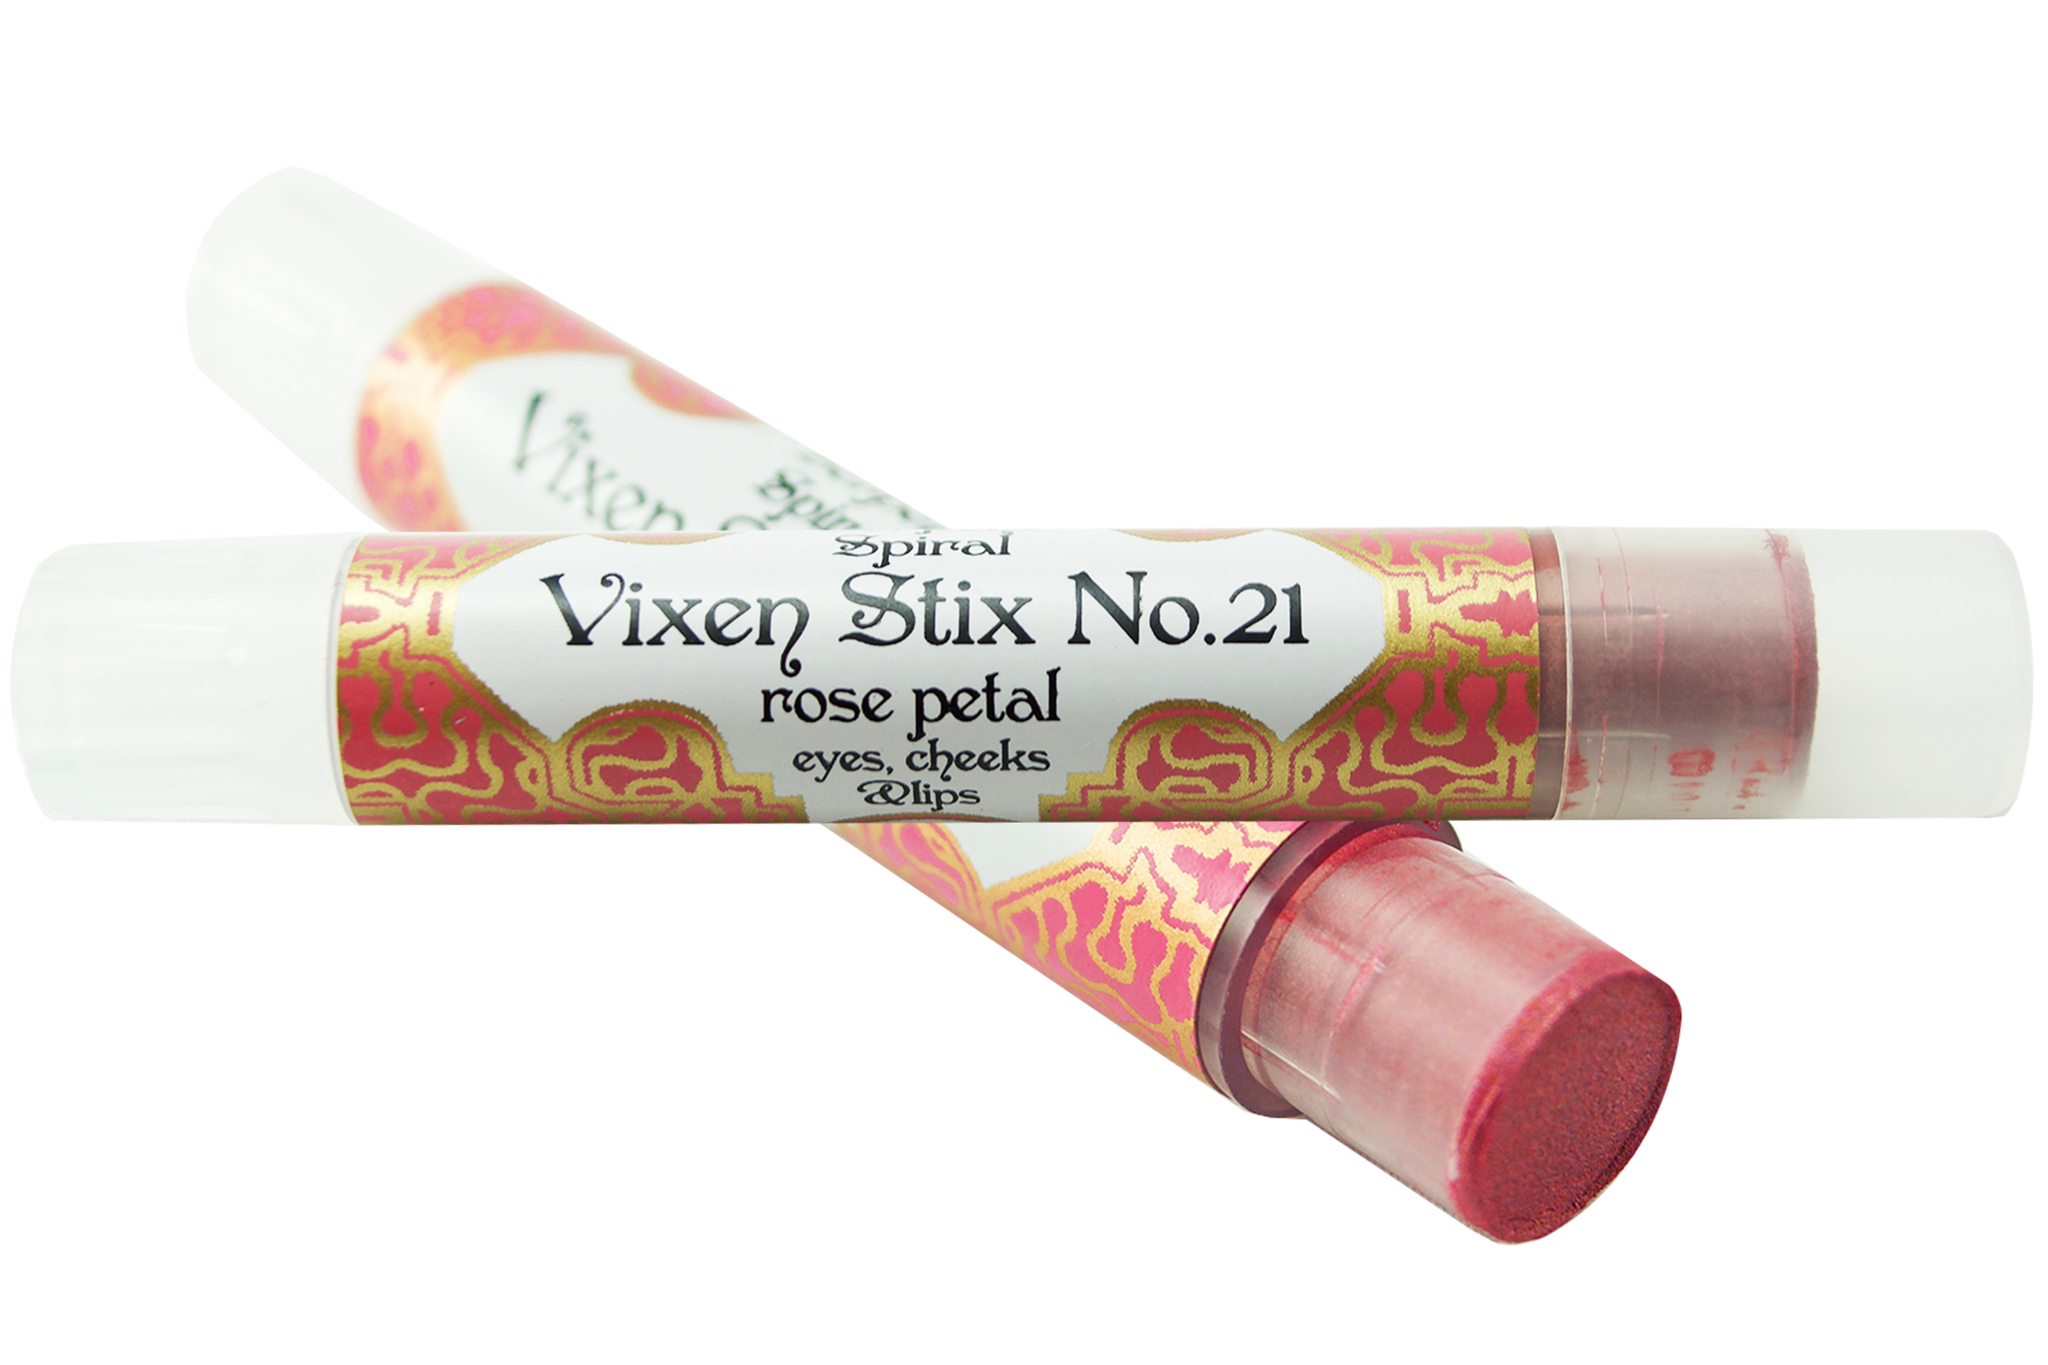 Vixen Stix No.21 ~ rose petal organic lip stick